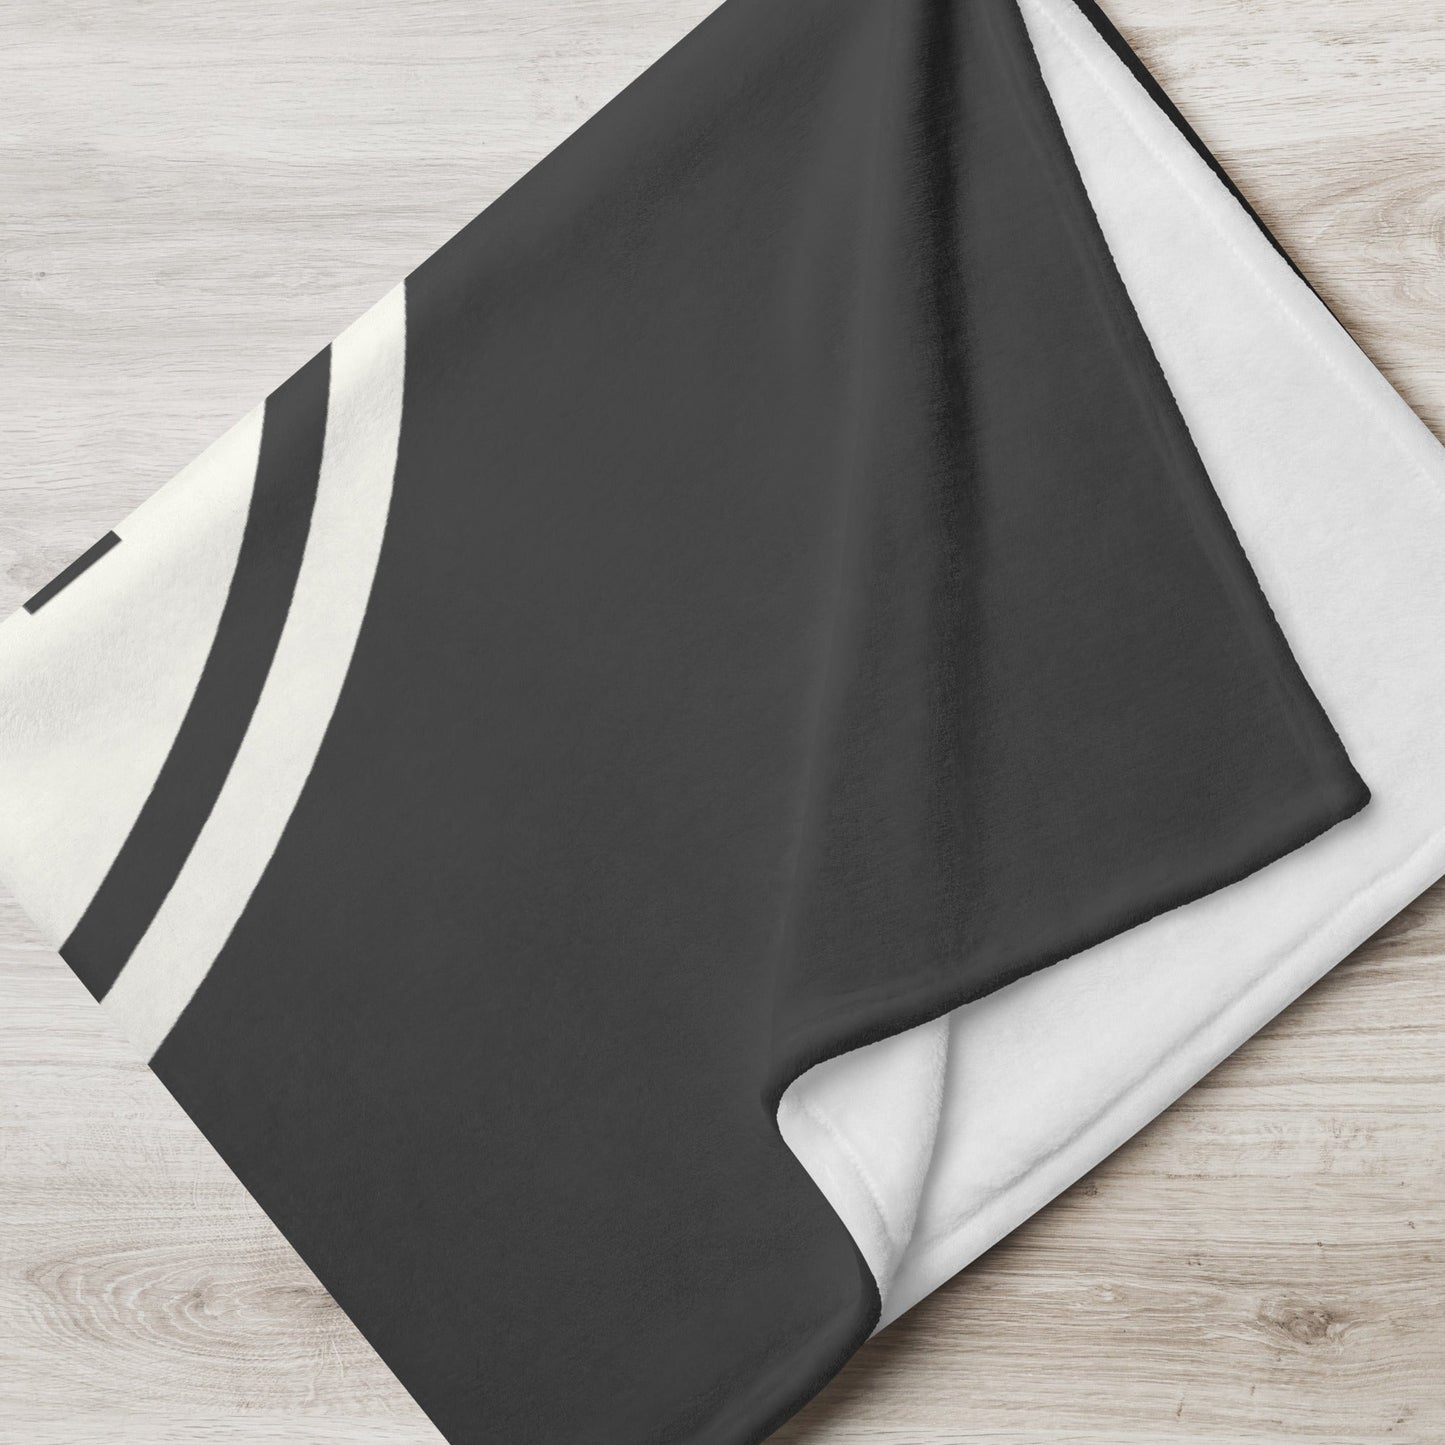 Unique Travel Gift Throw Blanket - White Oval • DXB Dubai • YHM Designs - Image 05